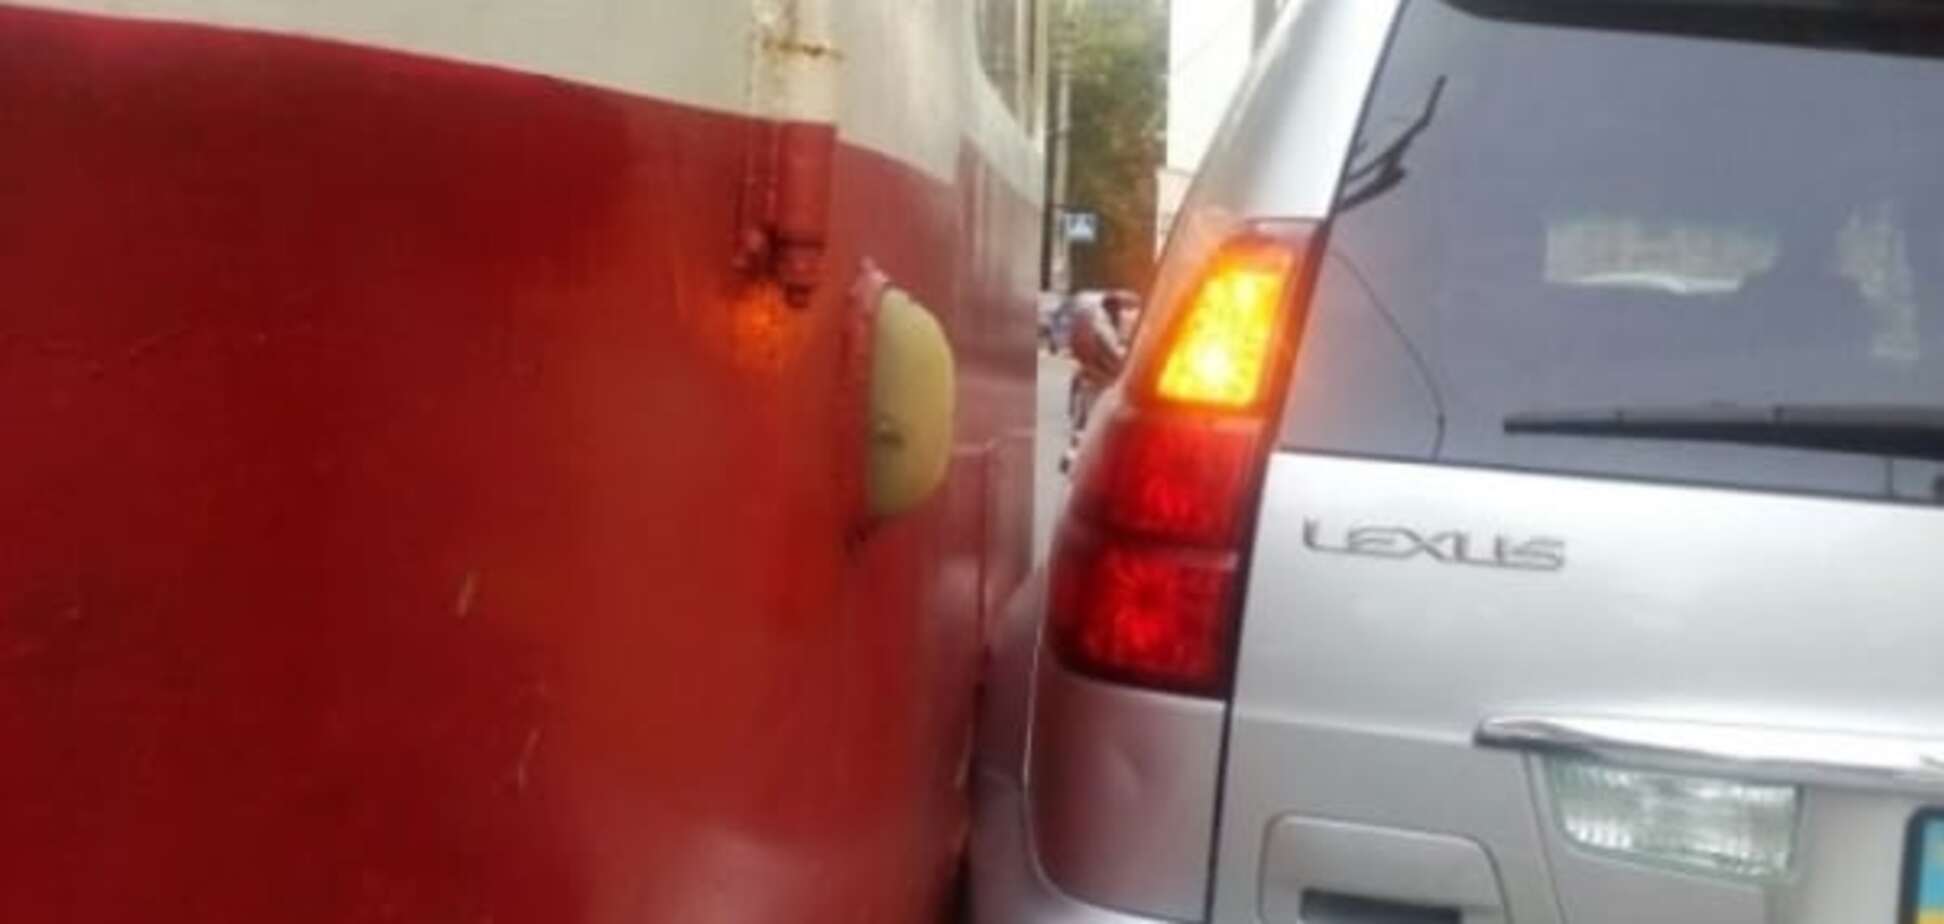 У Києві Lexus не поділив дорогу з трамваєм: фото аварії